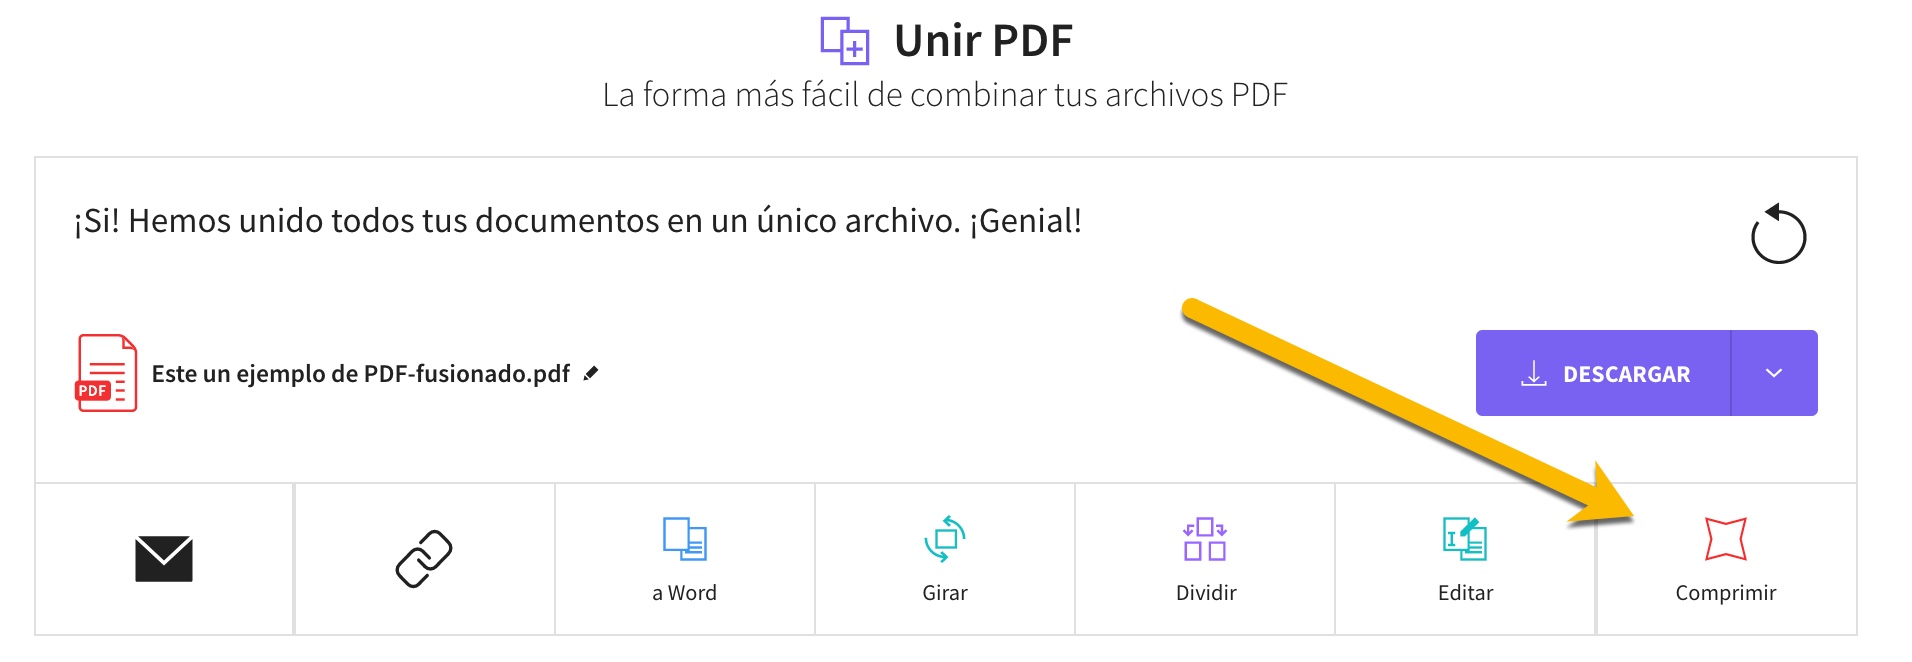 Cómo unir dos o más archivos PDF en uno solo